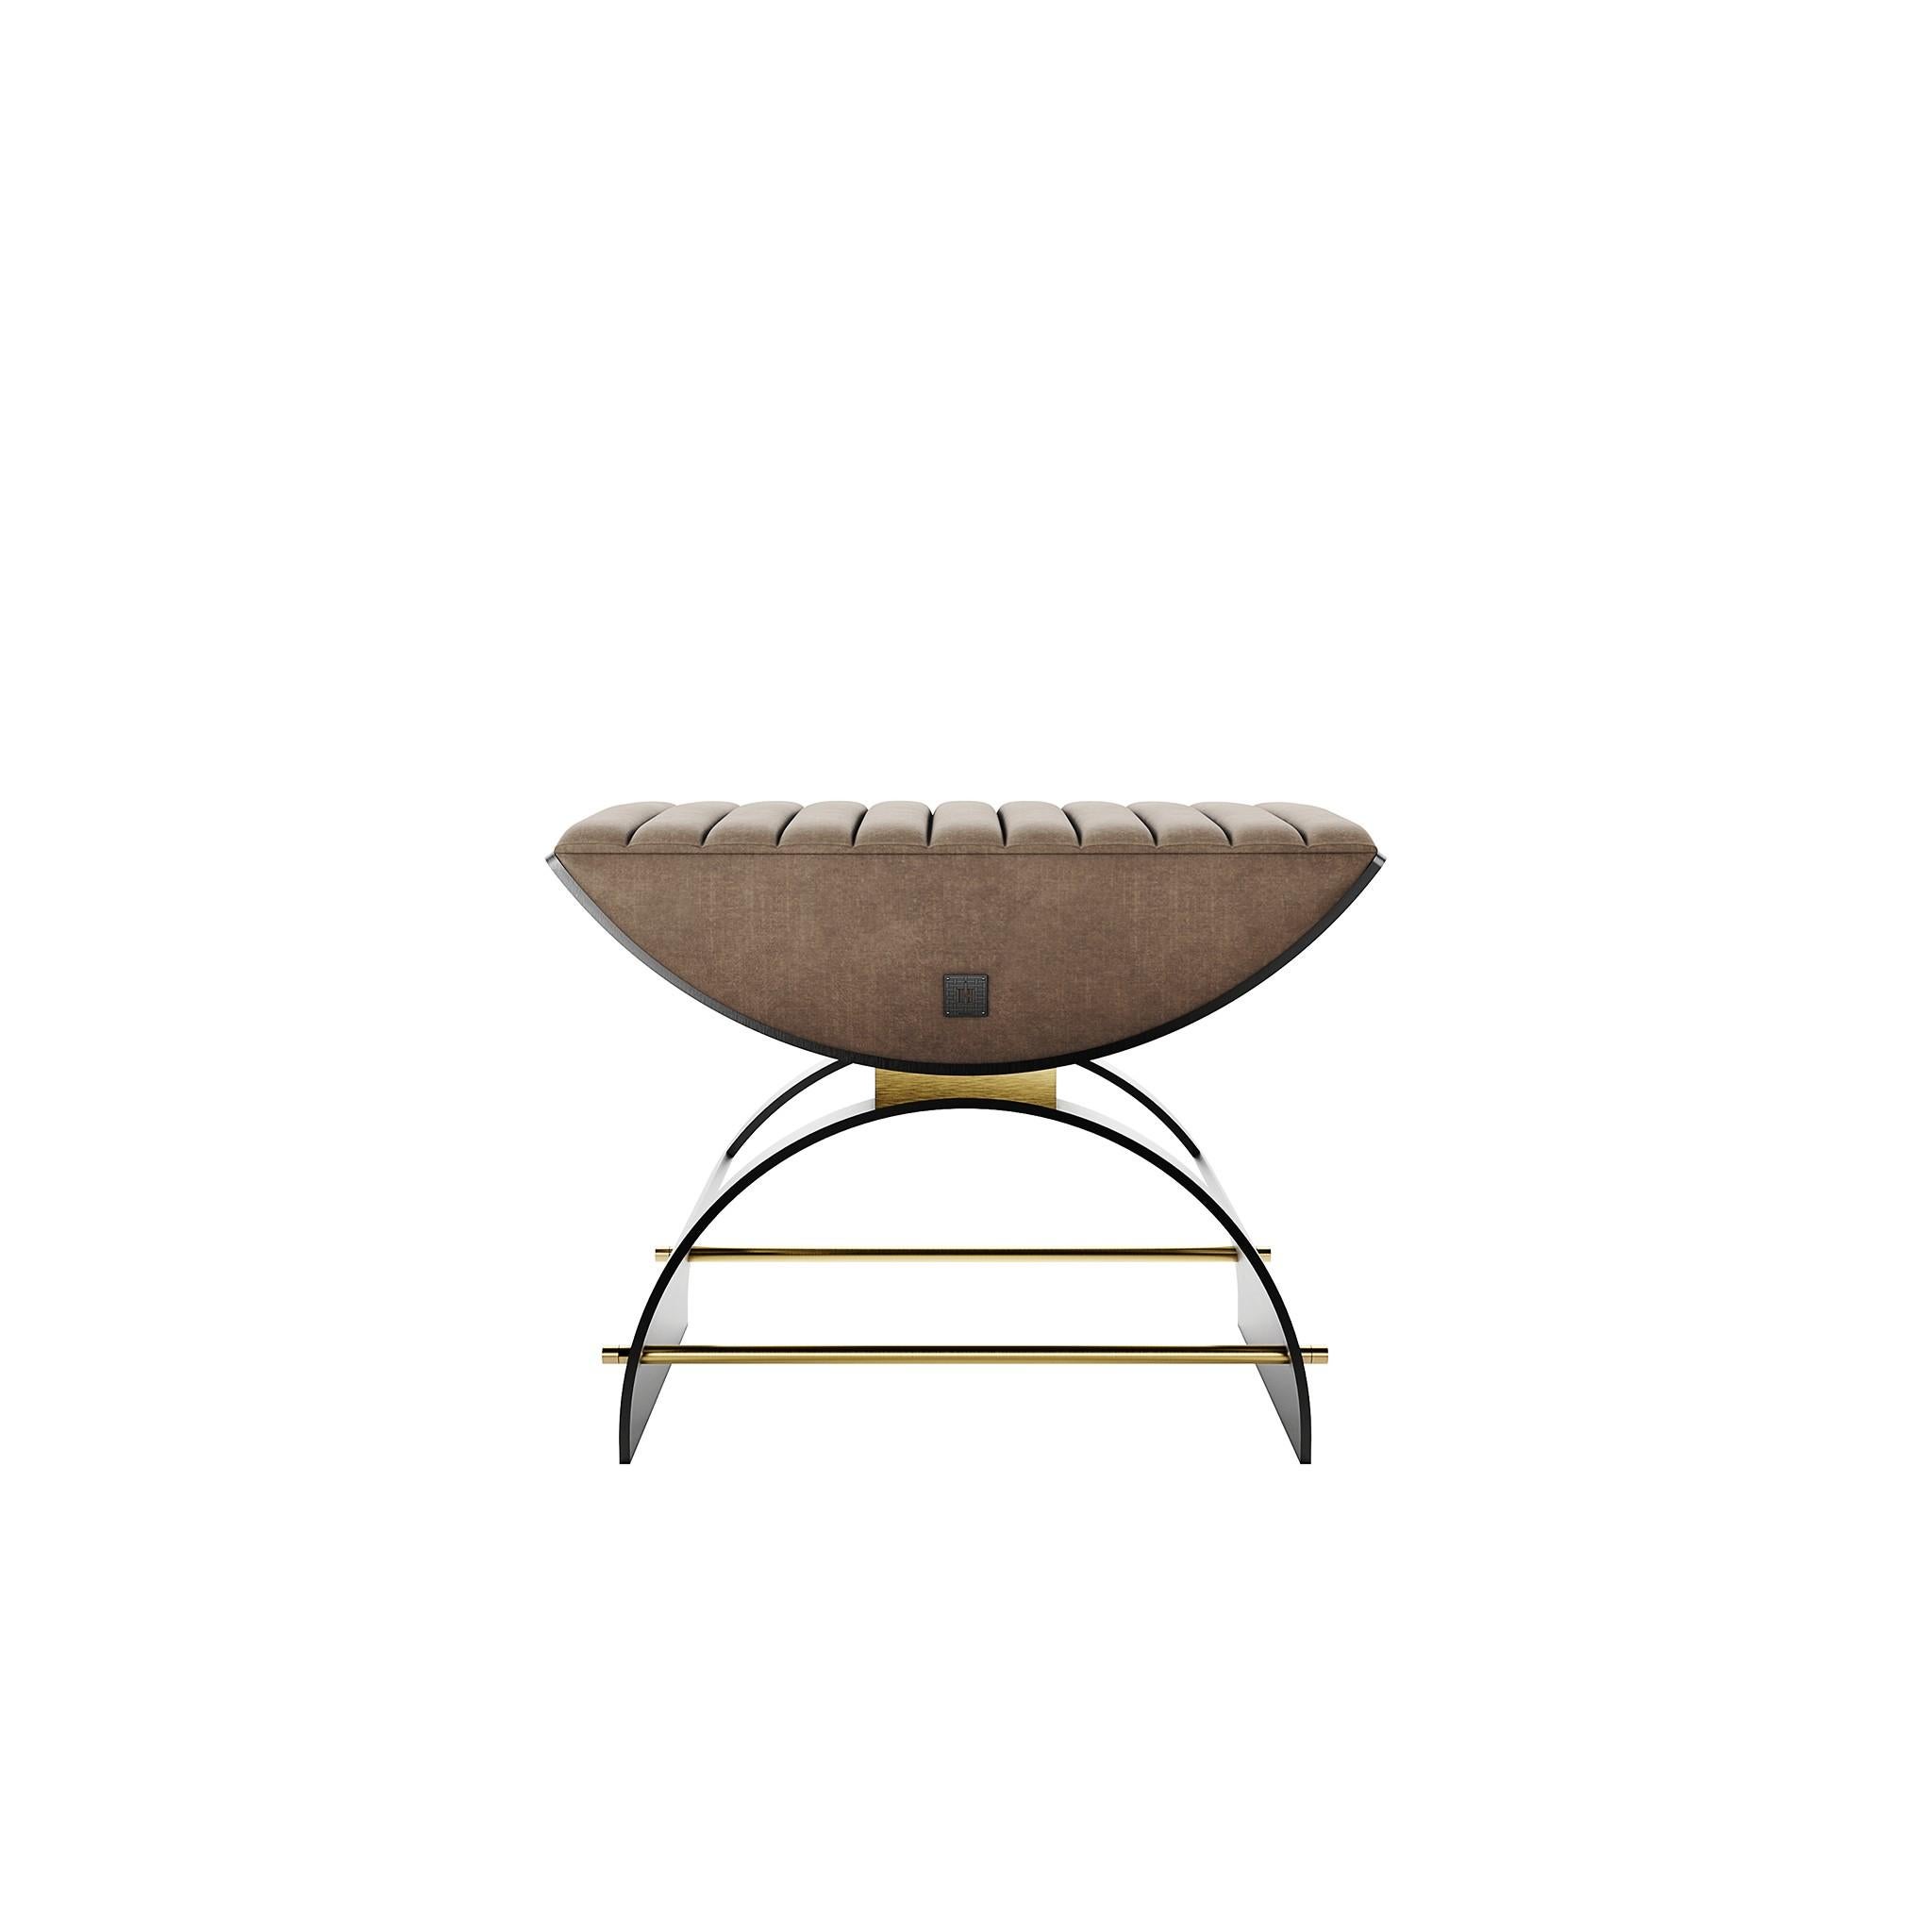 Der Hocker Eros ist ein modernes Design mit einem Vintage-Erbe. Die geschwungene Sitzfläche verleiht Ihrem Einrichtungsprojekt Komfort und Stil. Ein moderner, mit Samt bezogener Hocker eignet sich perfekt für das Hauptschlafzimmer oder als